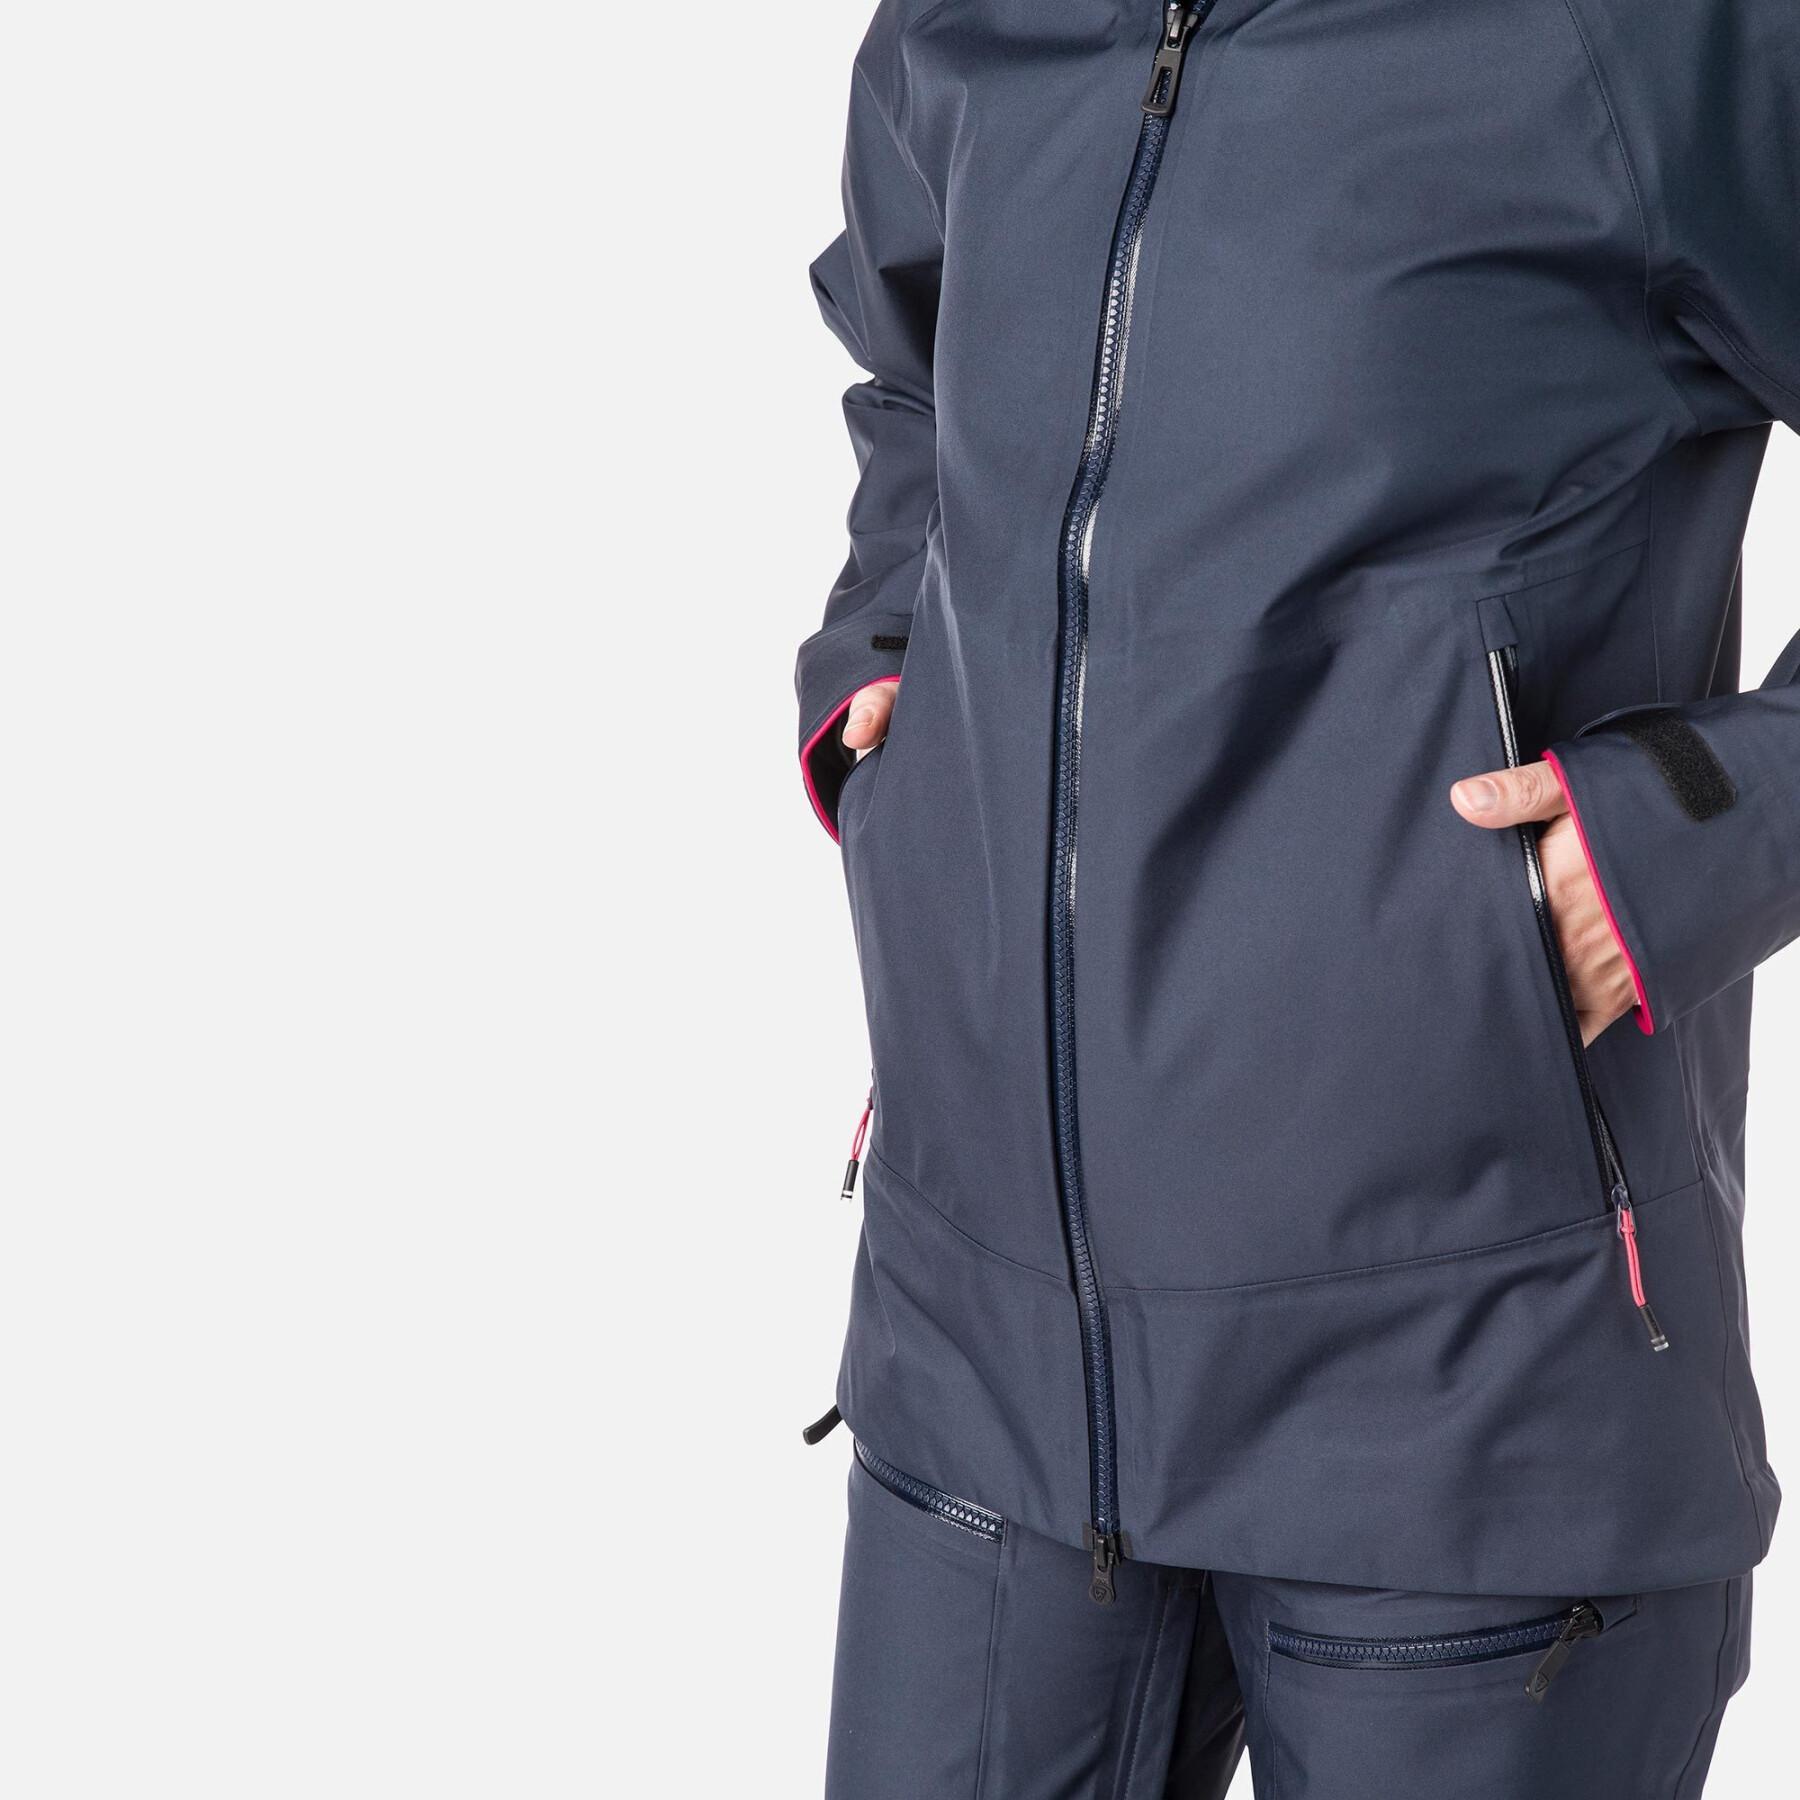 Women's waterproof jacket Rossignol SKPR 3L T